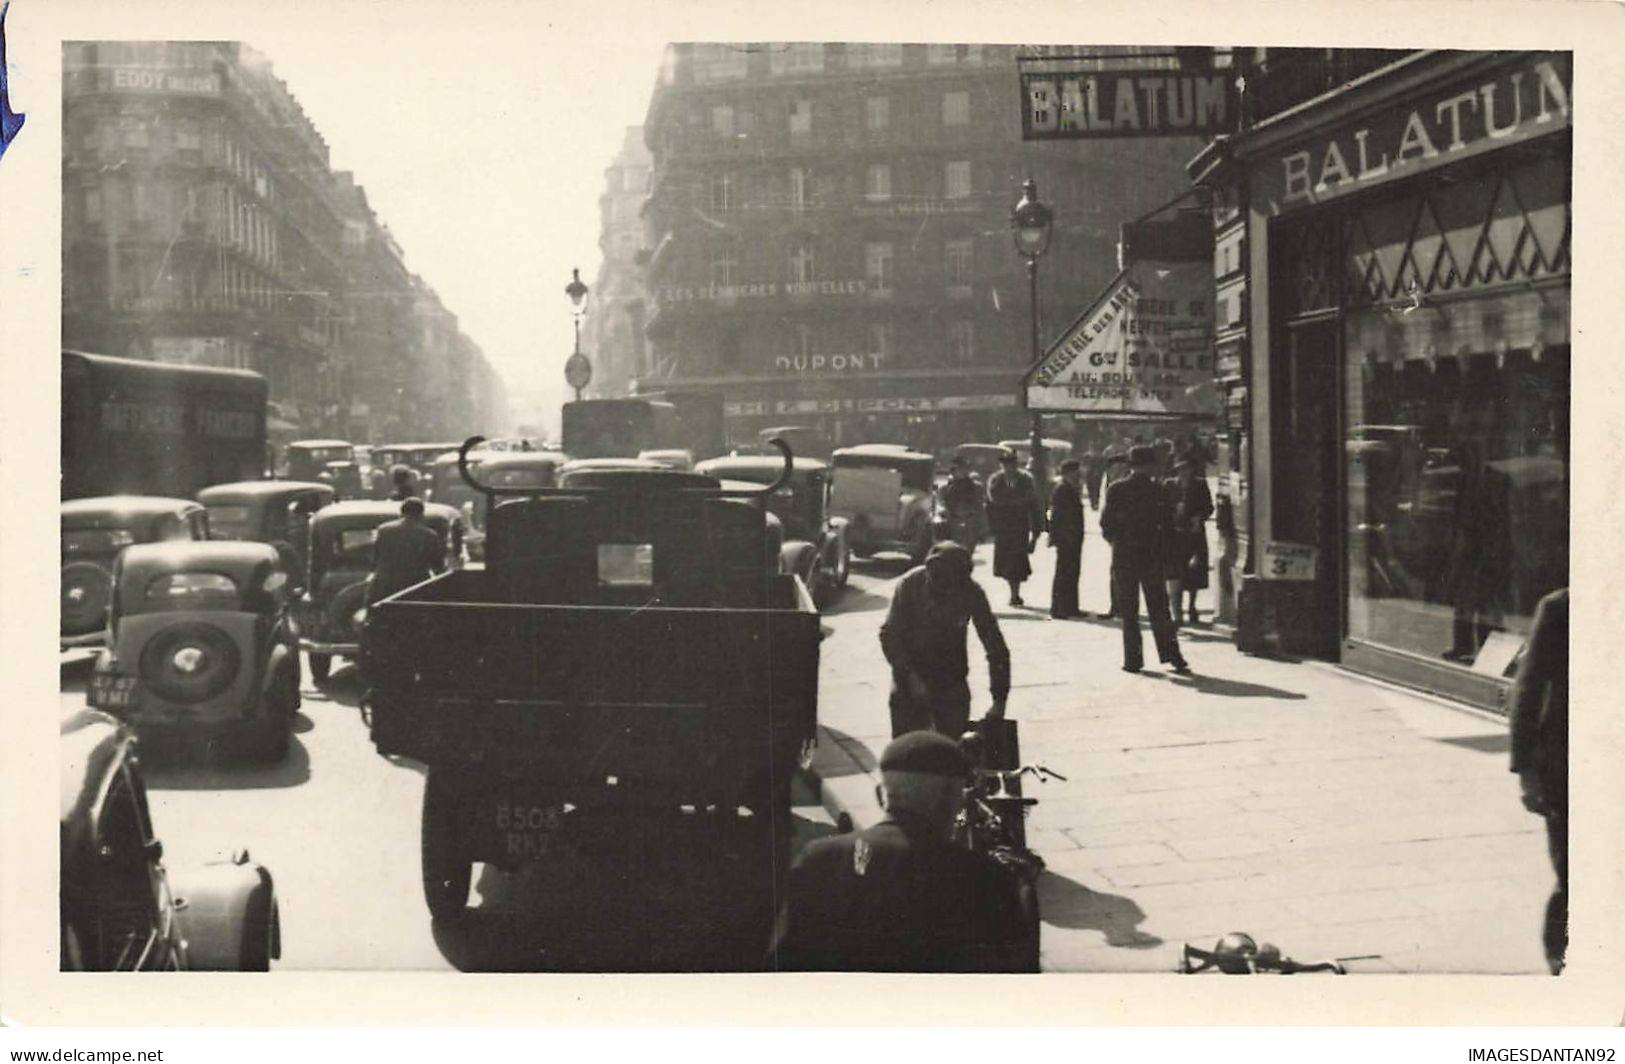 75003 PARIS #FG56560 CARREFOUR TURBIGO ET RUE REAUMUR CARTE PHOTO SERVICE TECHNIQUE PLAN 1943 - Distretto: 03